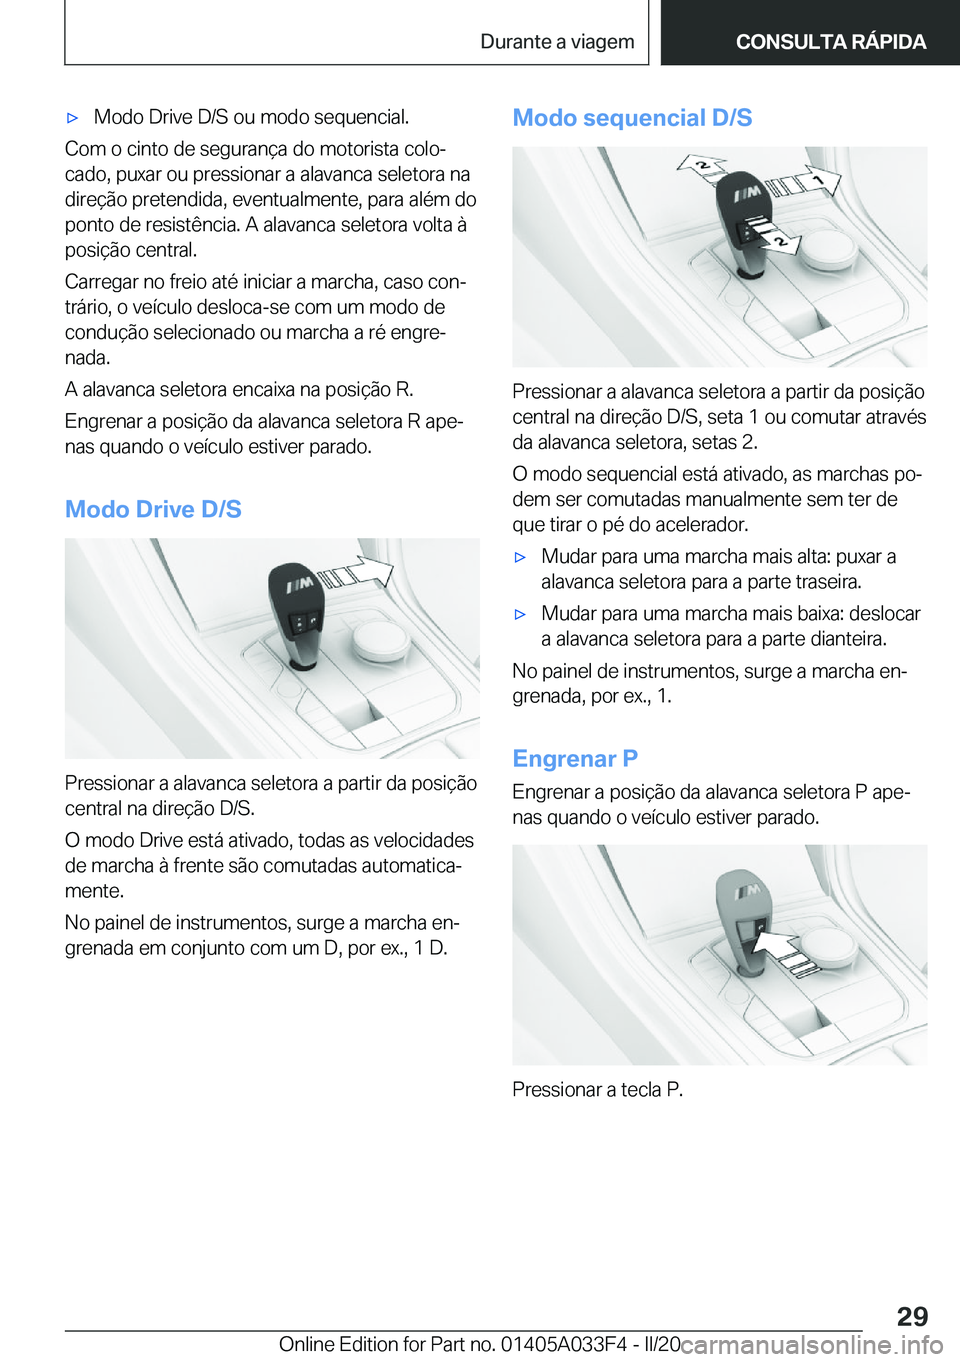 BMW X5 M 2020  Manual do condutor (in Portuguese) 'x�M�o�d�o��D�r�i�v�e��D�/�S��o�u��m�o�d�o��s�e�q�u�e�n�c�i�a�l�.
�C�o�m��o��c�i�n�t�o��d�e��s�e�g�u�r�a�n�